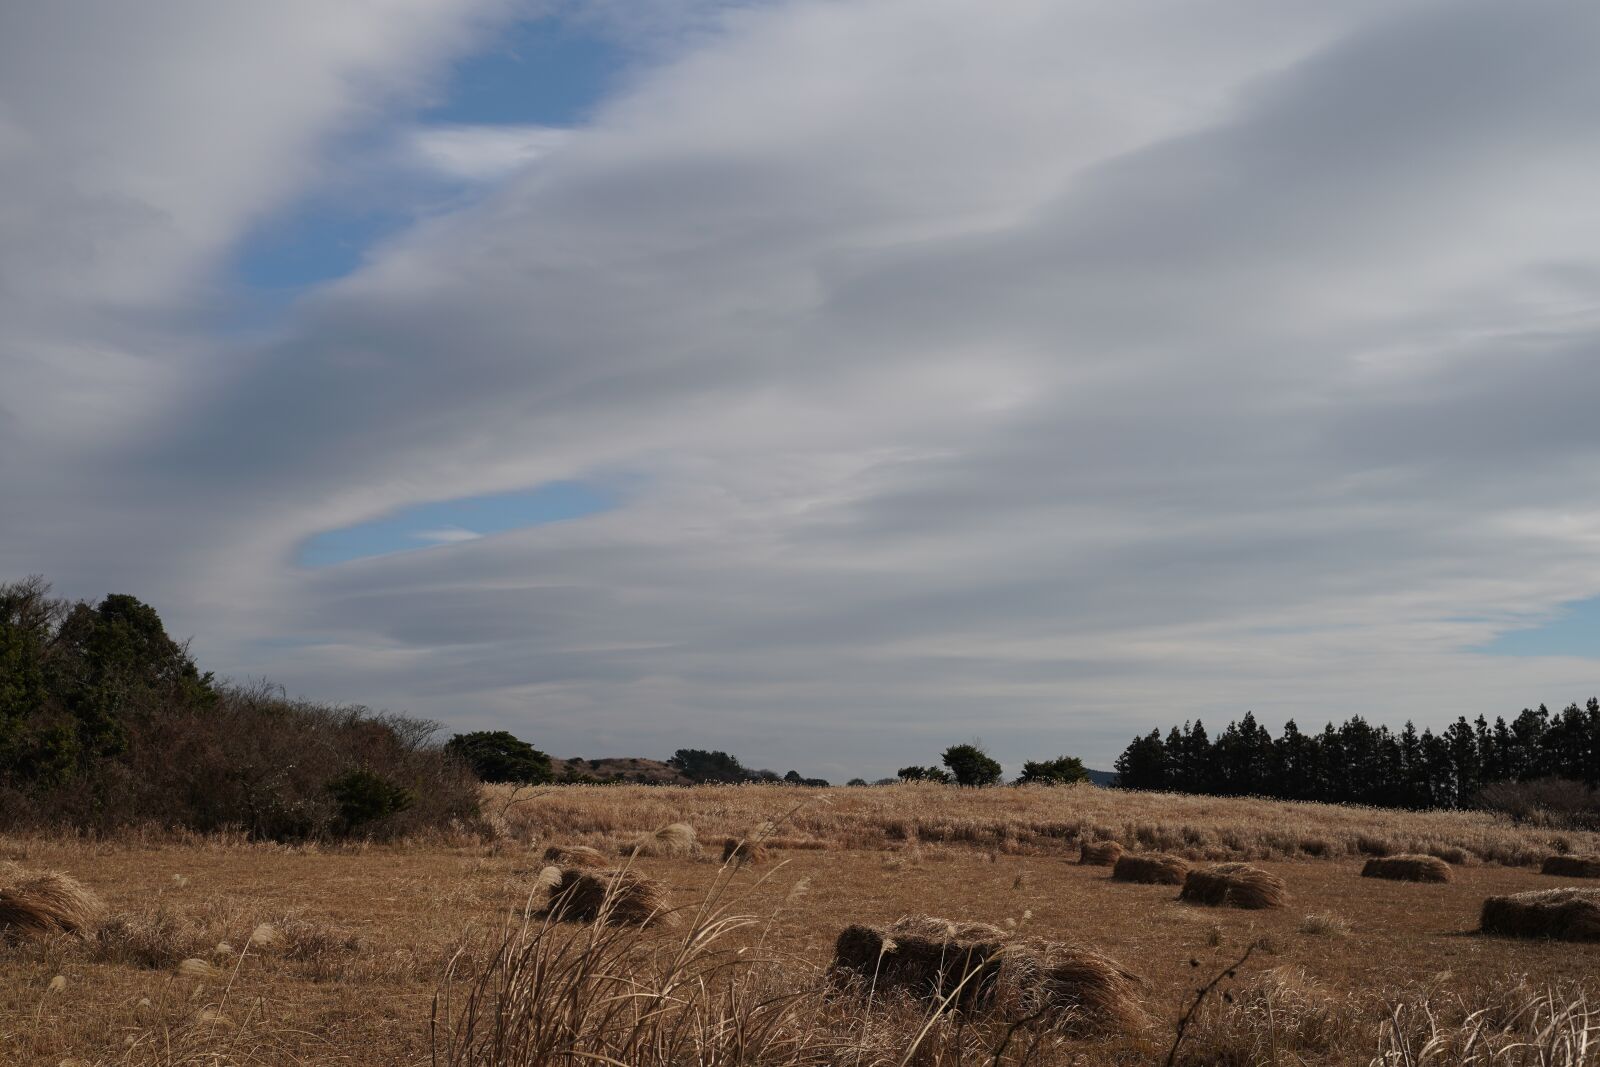 Sony a9 sample photo. Sky, cloud, farming photography